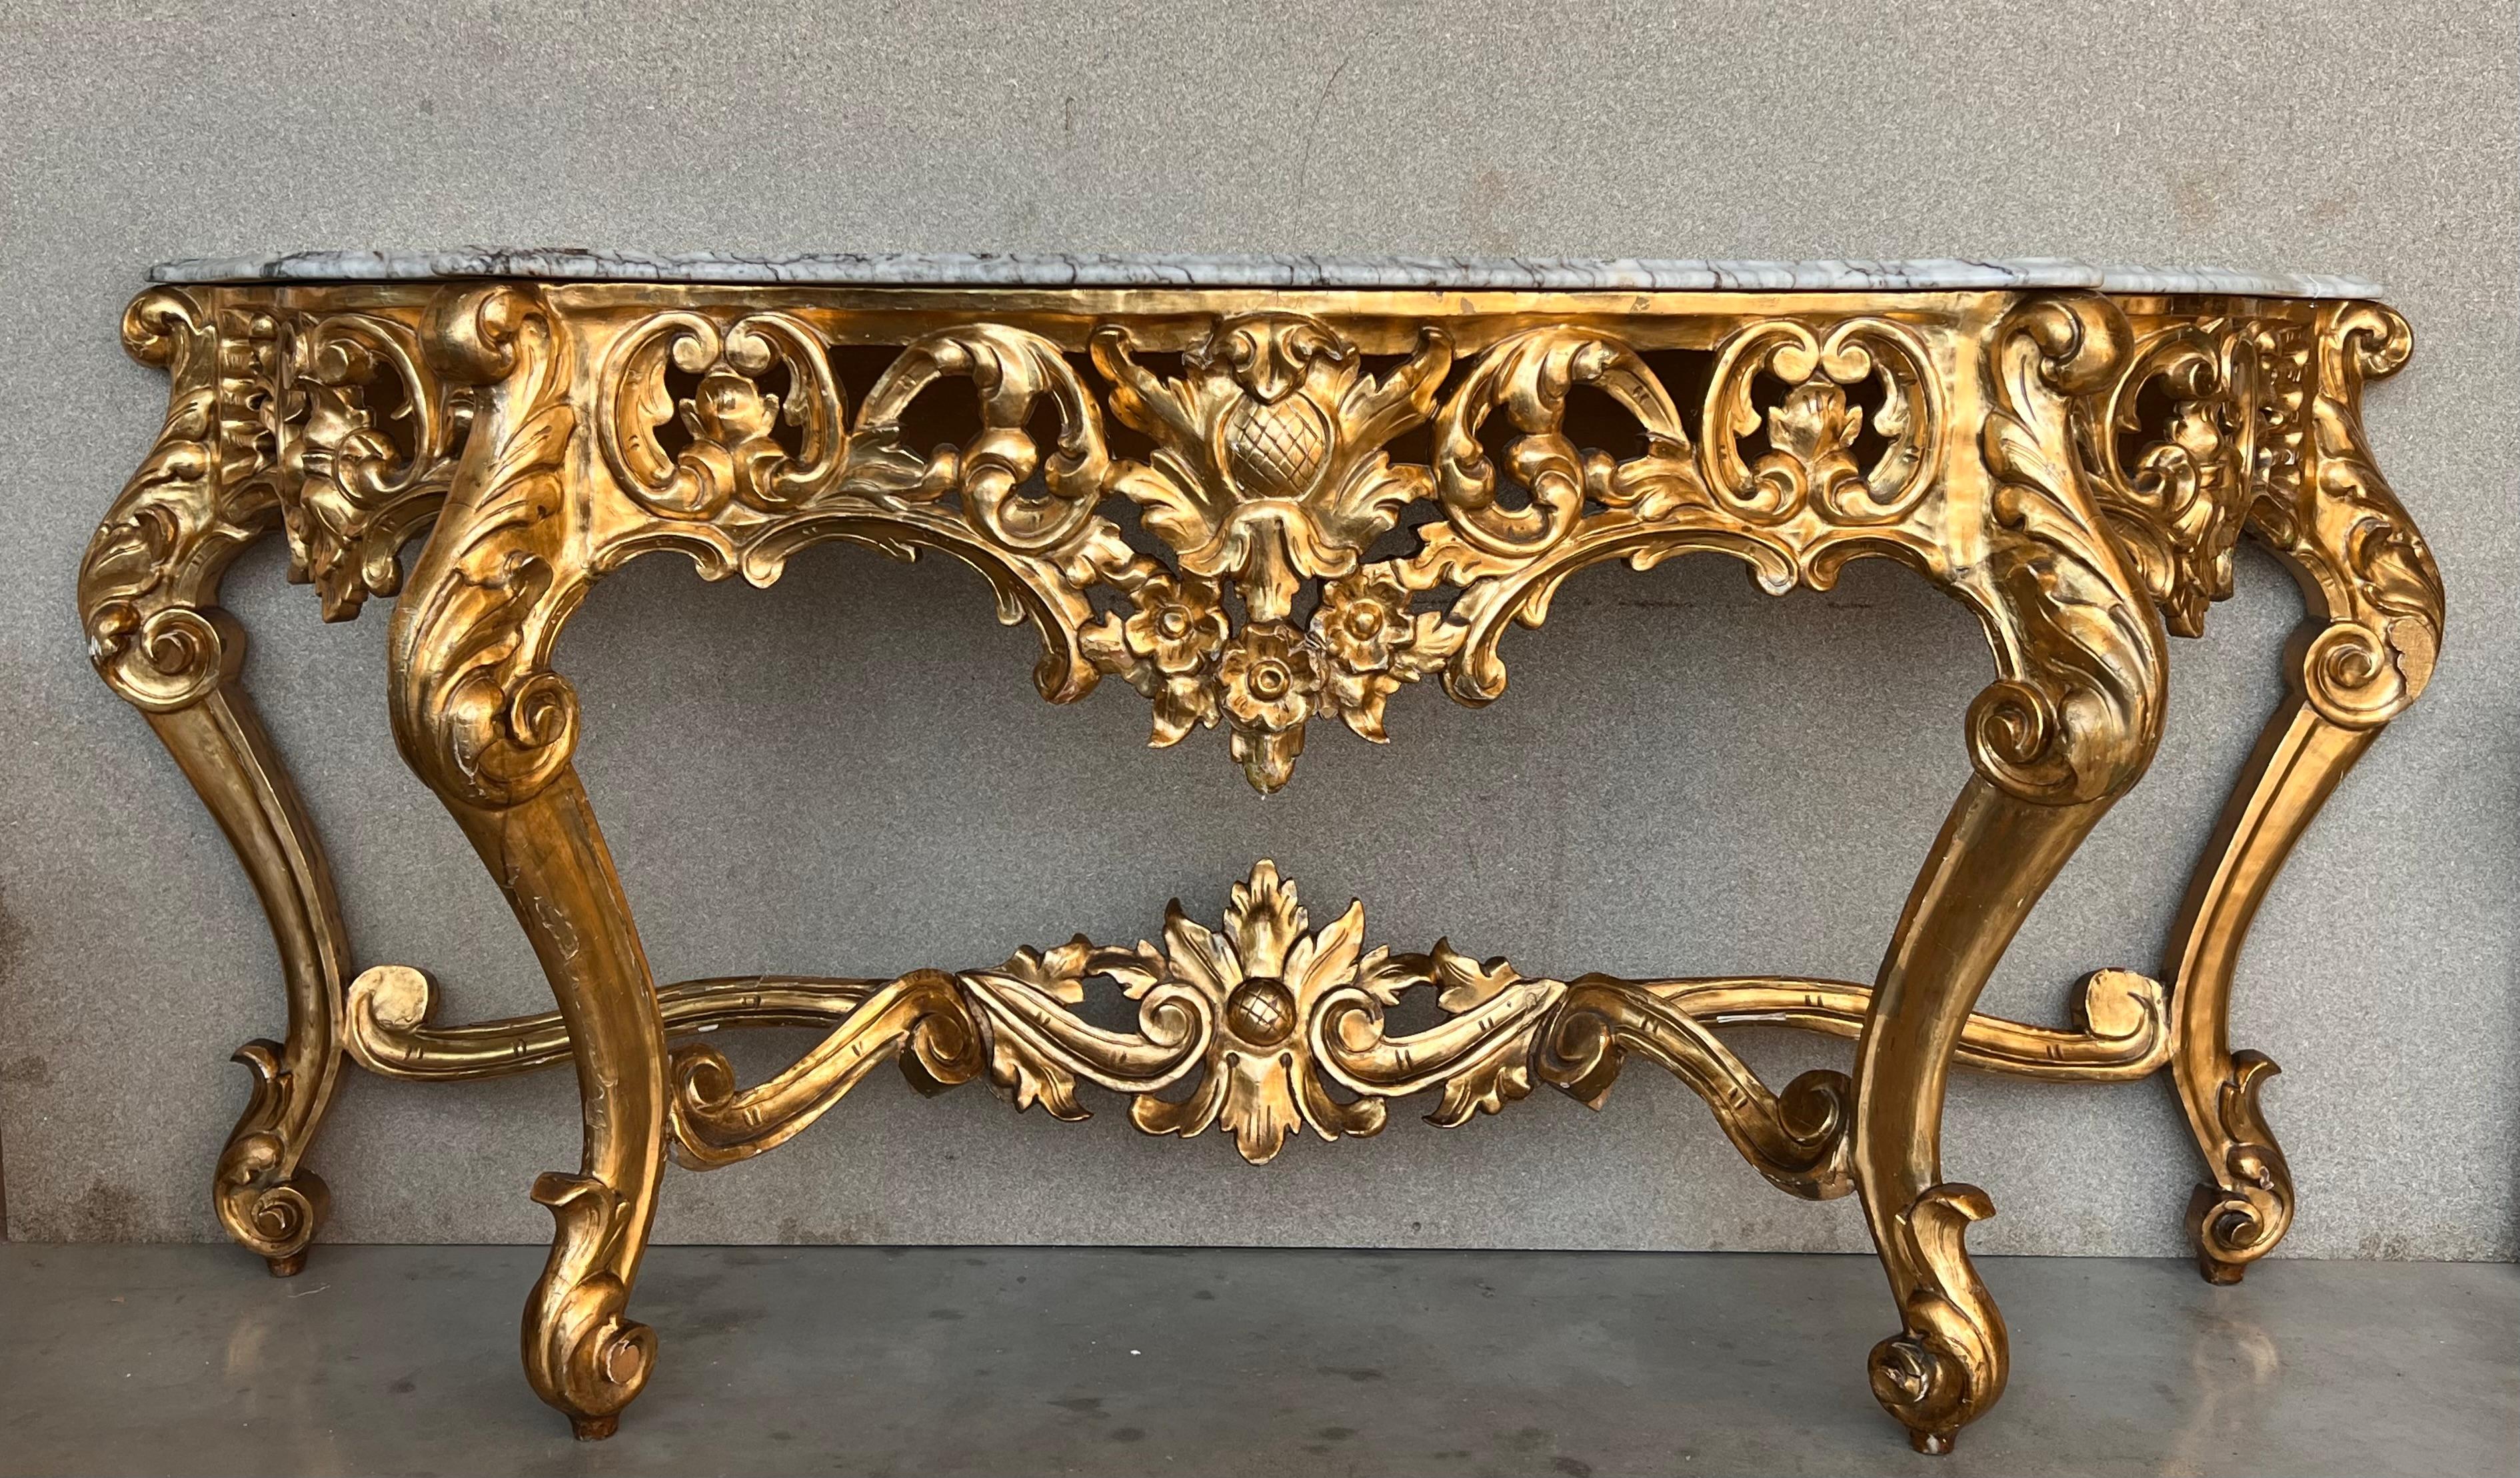 Magnifique et grande console espagnole du XXe siècle de style baroque, en bronze doré et marbre blanc. La console la plus impressionnante est soulevée par d'élégants pieds à feuilles d'acanthe enroulées sous les puissants pieds à volutes avec des